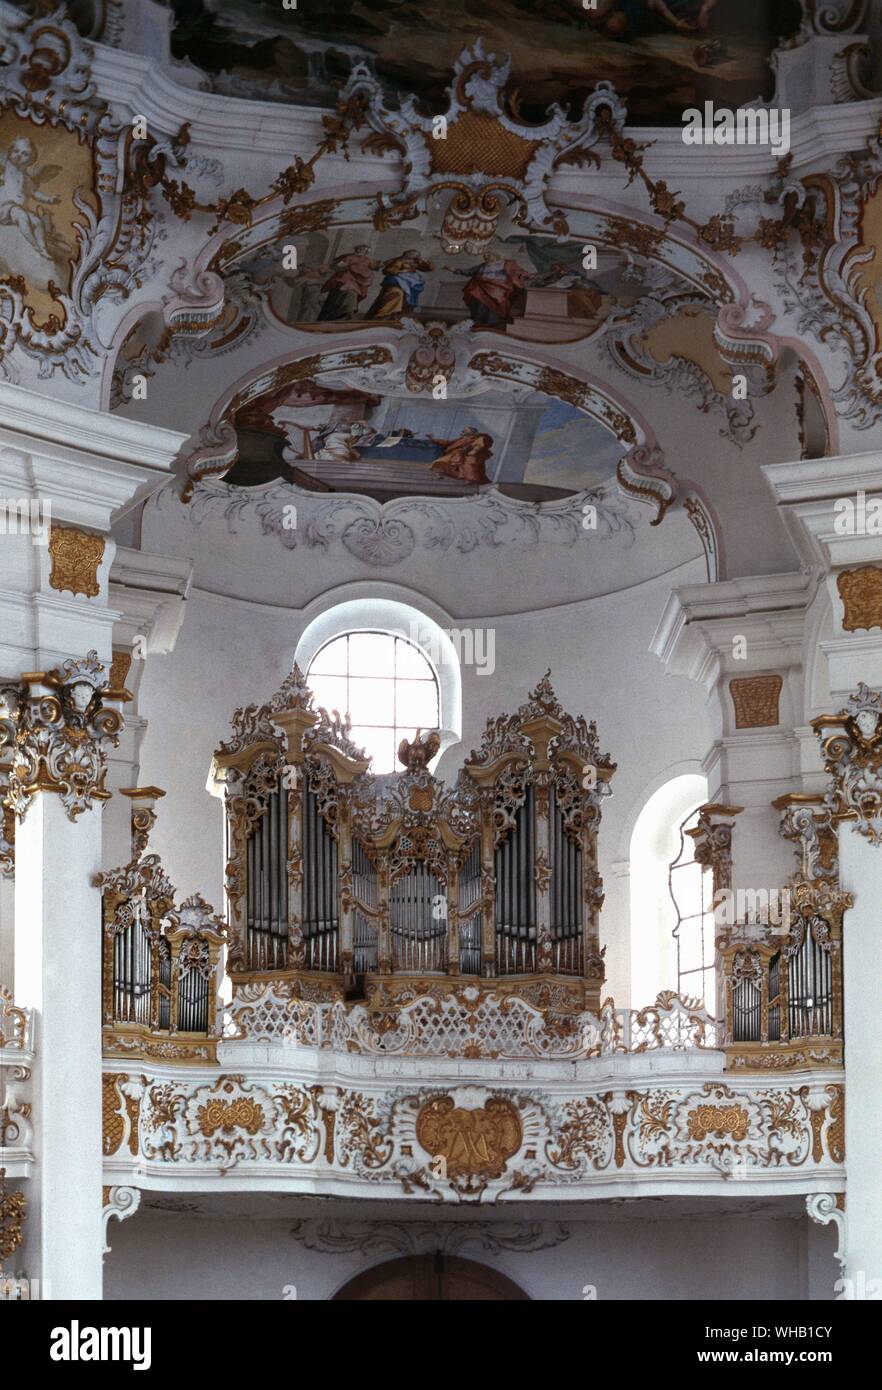 Orgelgehäuse von Dominikus Zimmermann - Orgel von Steinmeyer - Garmisch Partenkirchen, Bayern (westkirche). Stockfoto